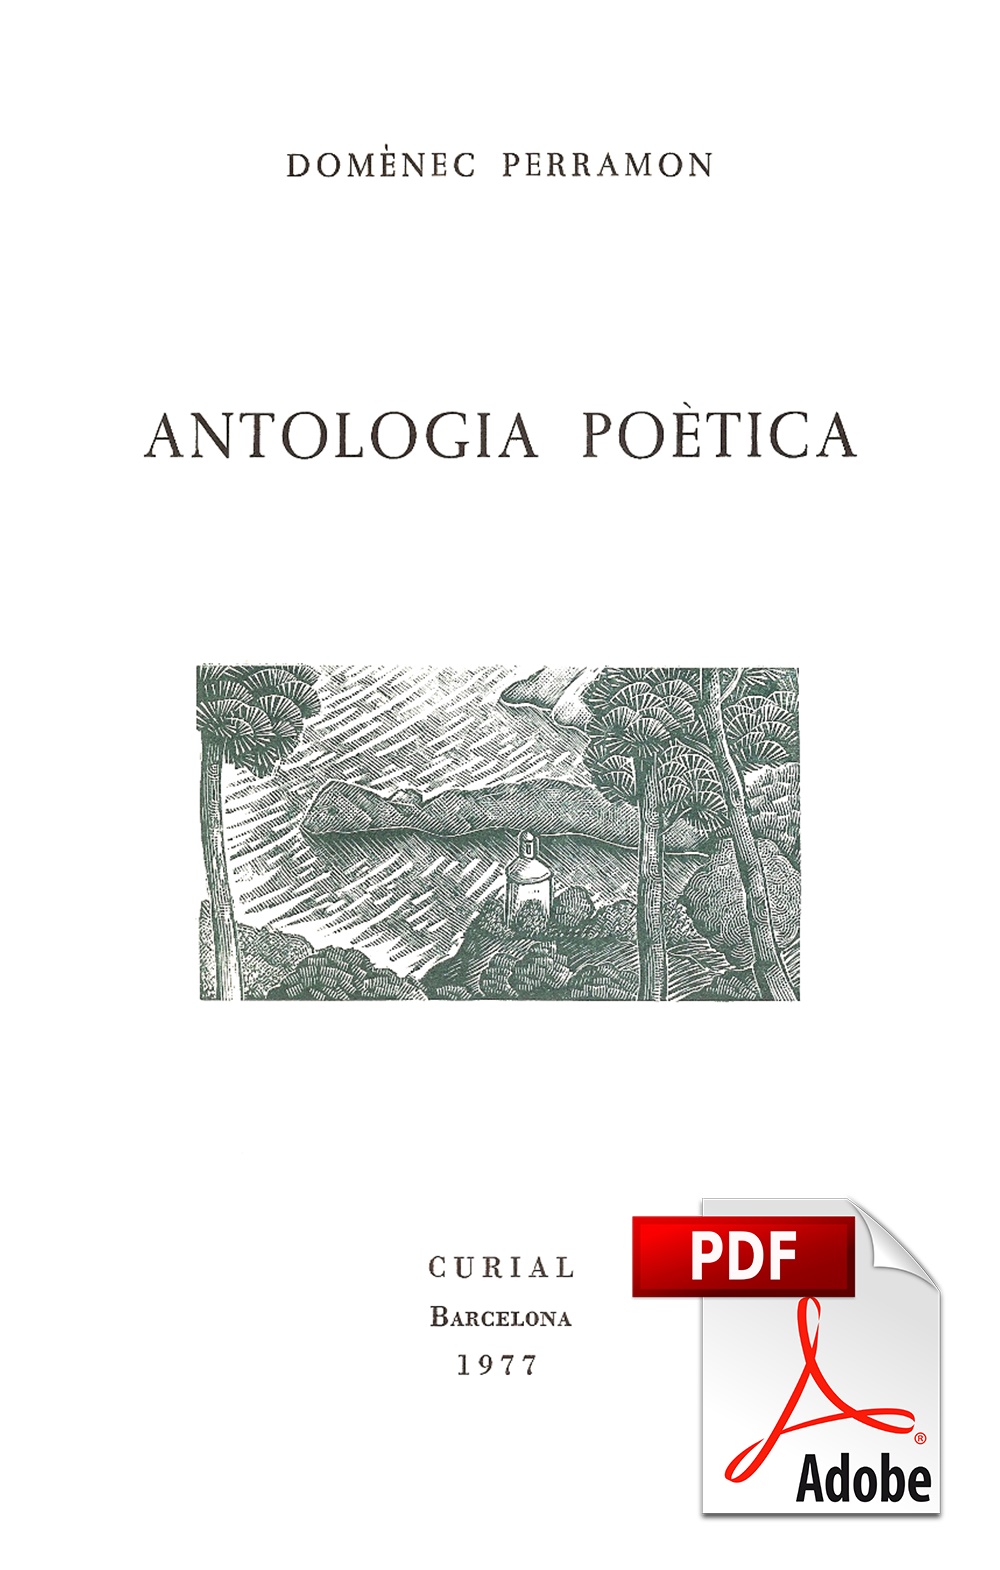 Domènec Perramon - Antologia poètica (pdf)